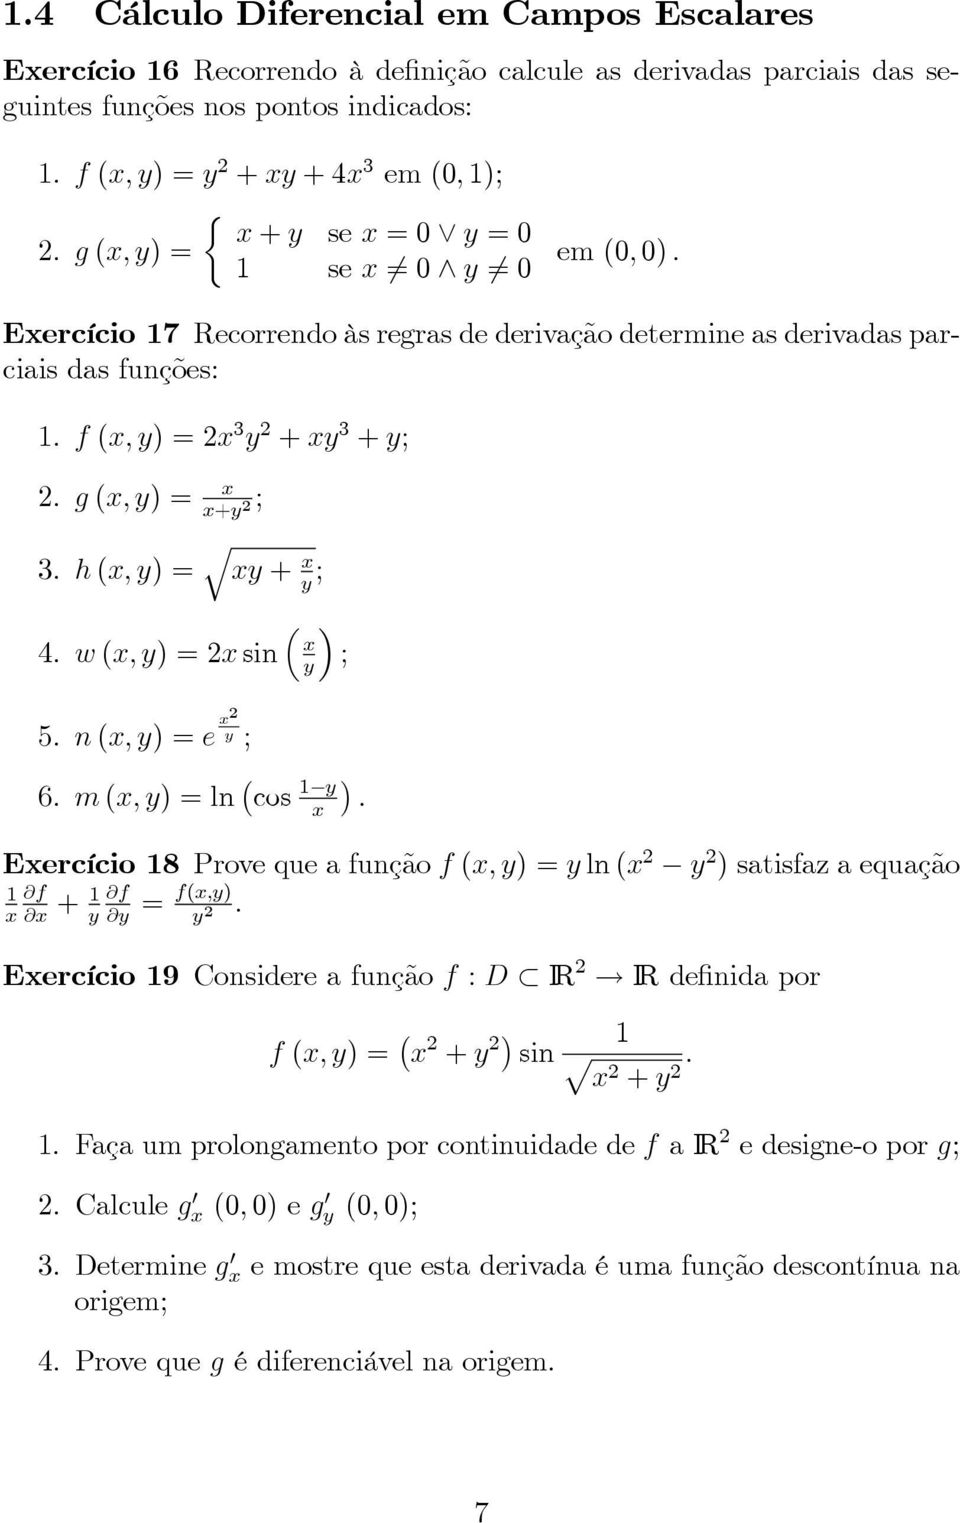 h (, ) = q + ; ³ 4. w (, ) =2 sin 5. n (, ) =e 2 ; ; 6. m (, ) =ln cos 1. Eercício 18 Prove que a função f (, ) = ln ( 2 2 ) satisfa a equação 1 f + 1 f = f(,).